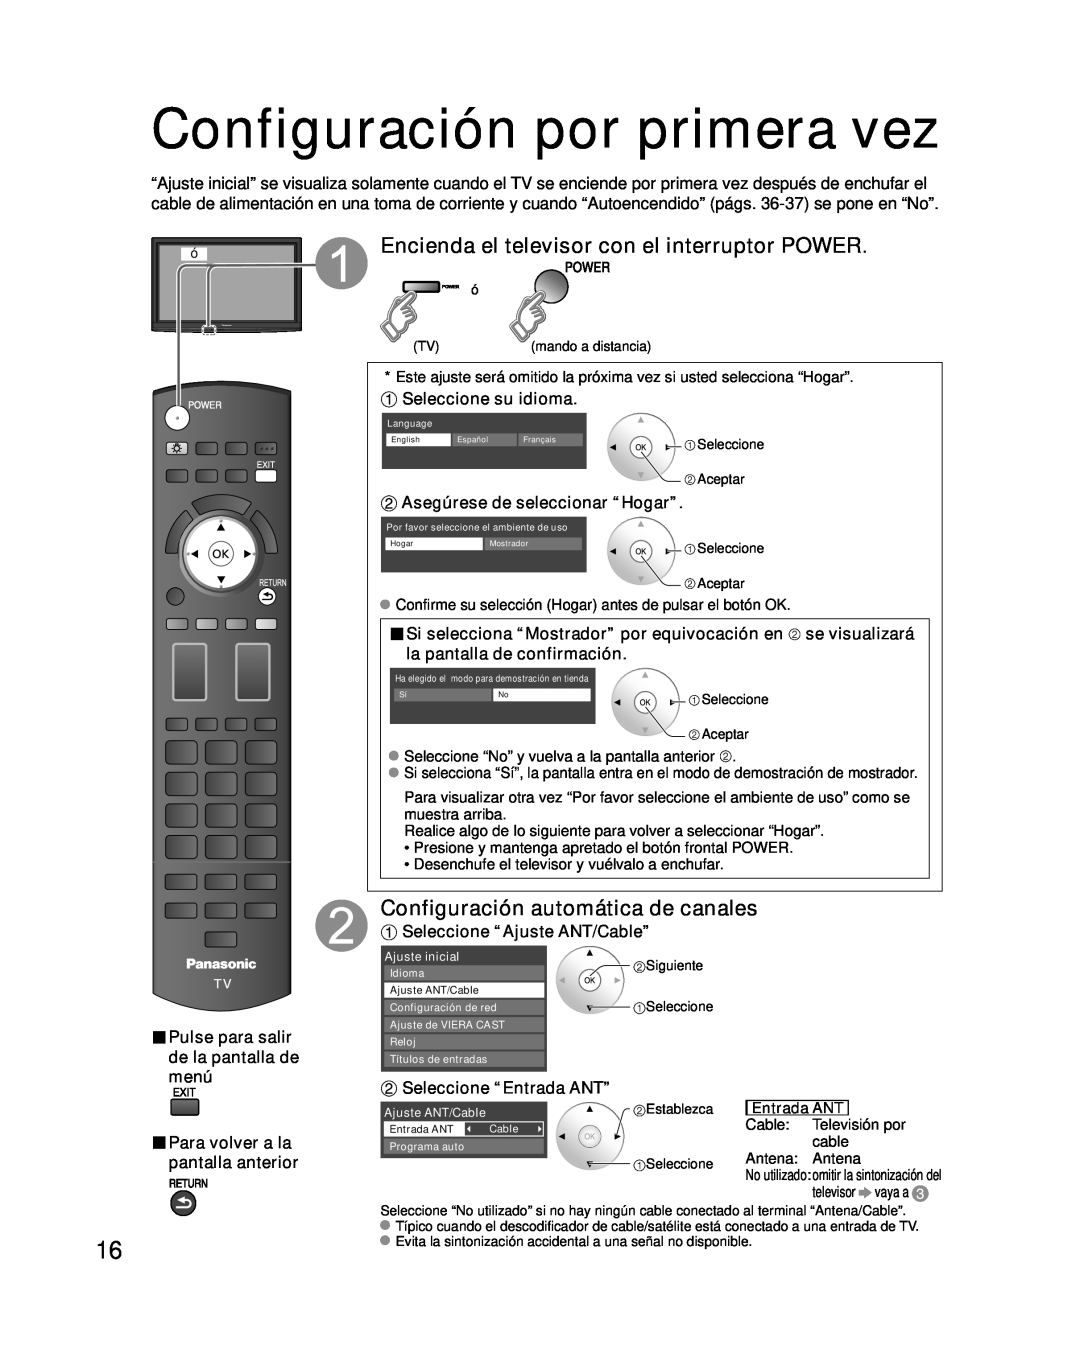 Panasonic TC-P50G10 Configuración por primera vez, Encienda el televisor con el interruptor POWER, Seleccione su idioma 